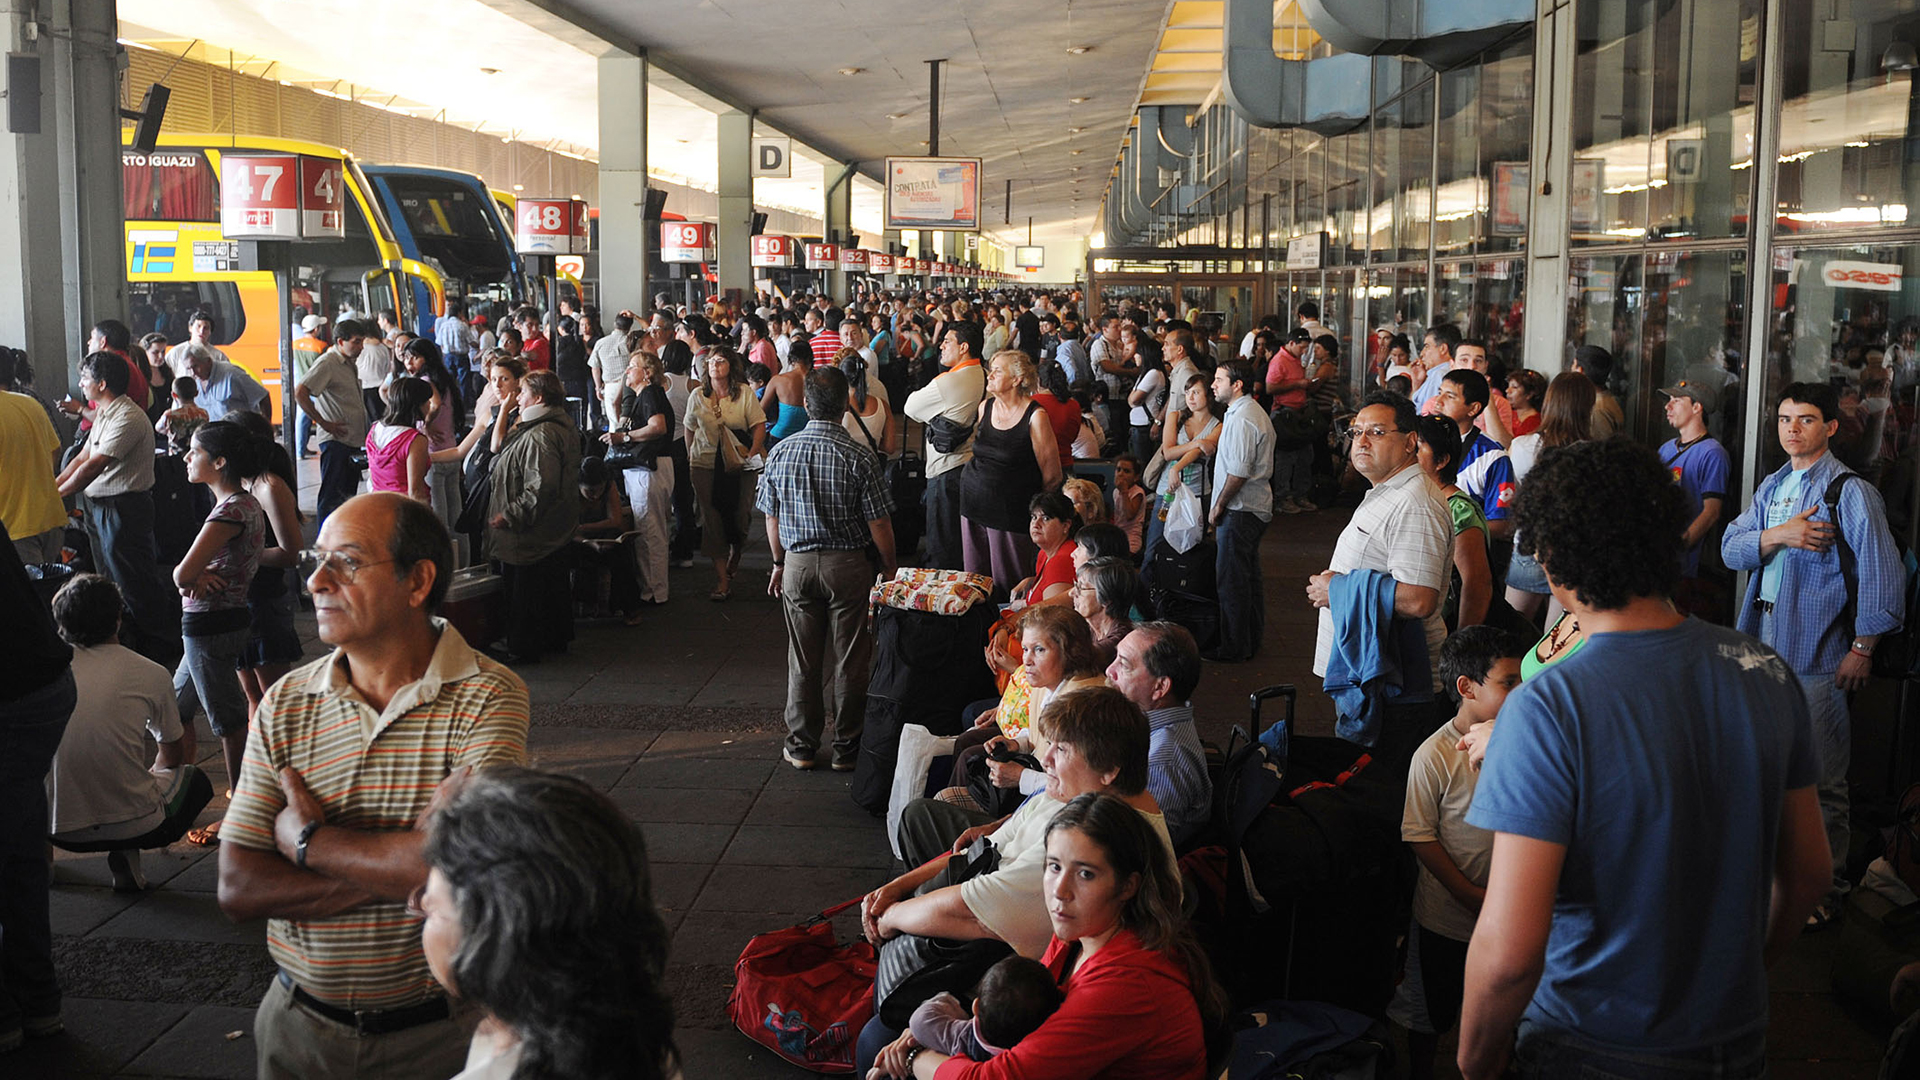 Tucumán: dos colectivos llegaron de Córdoba con más de 50 pasajeros contagiados de coronavirus